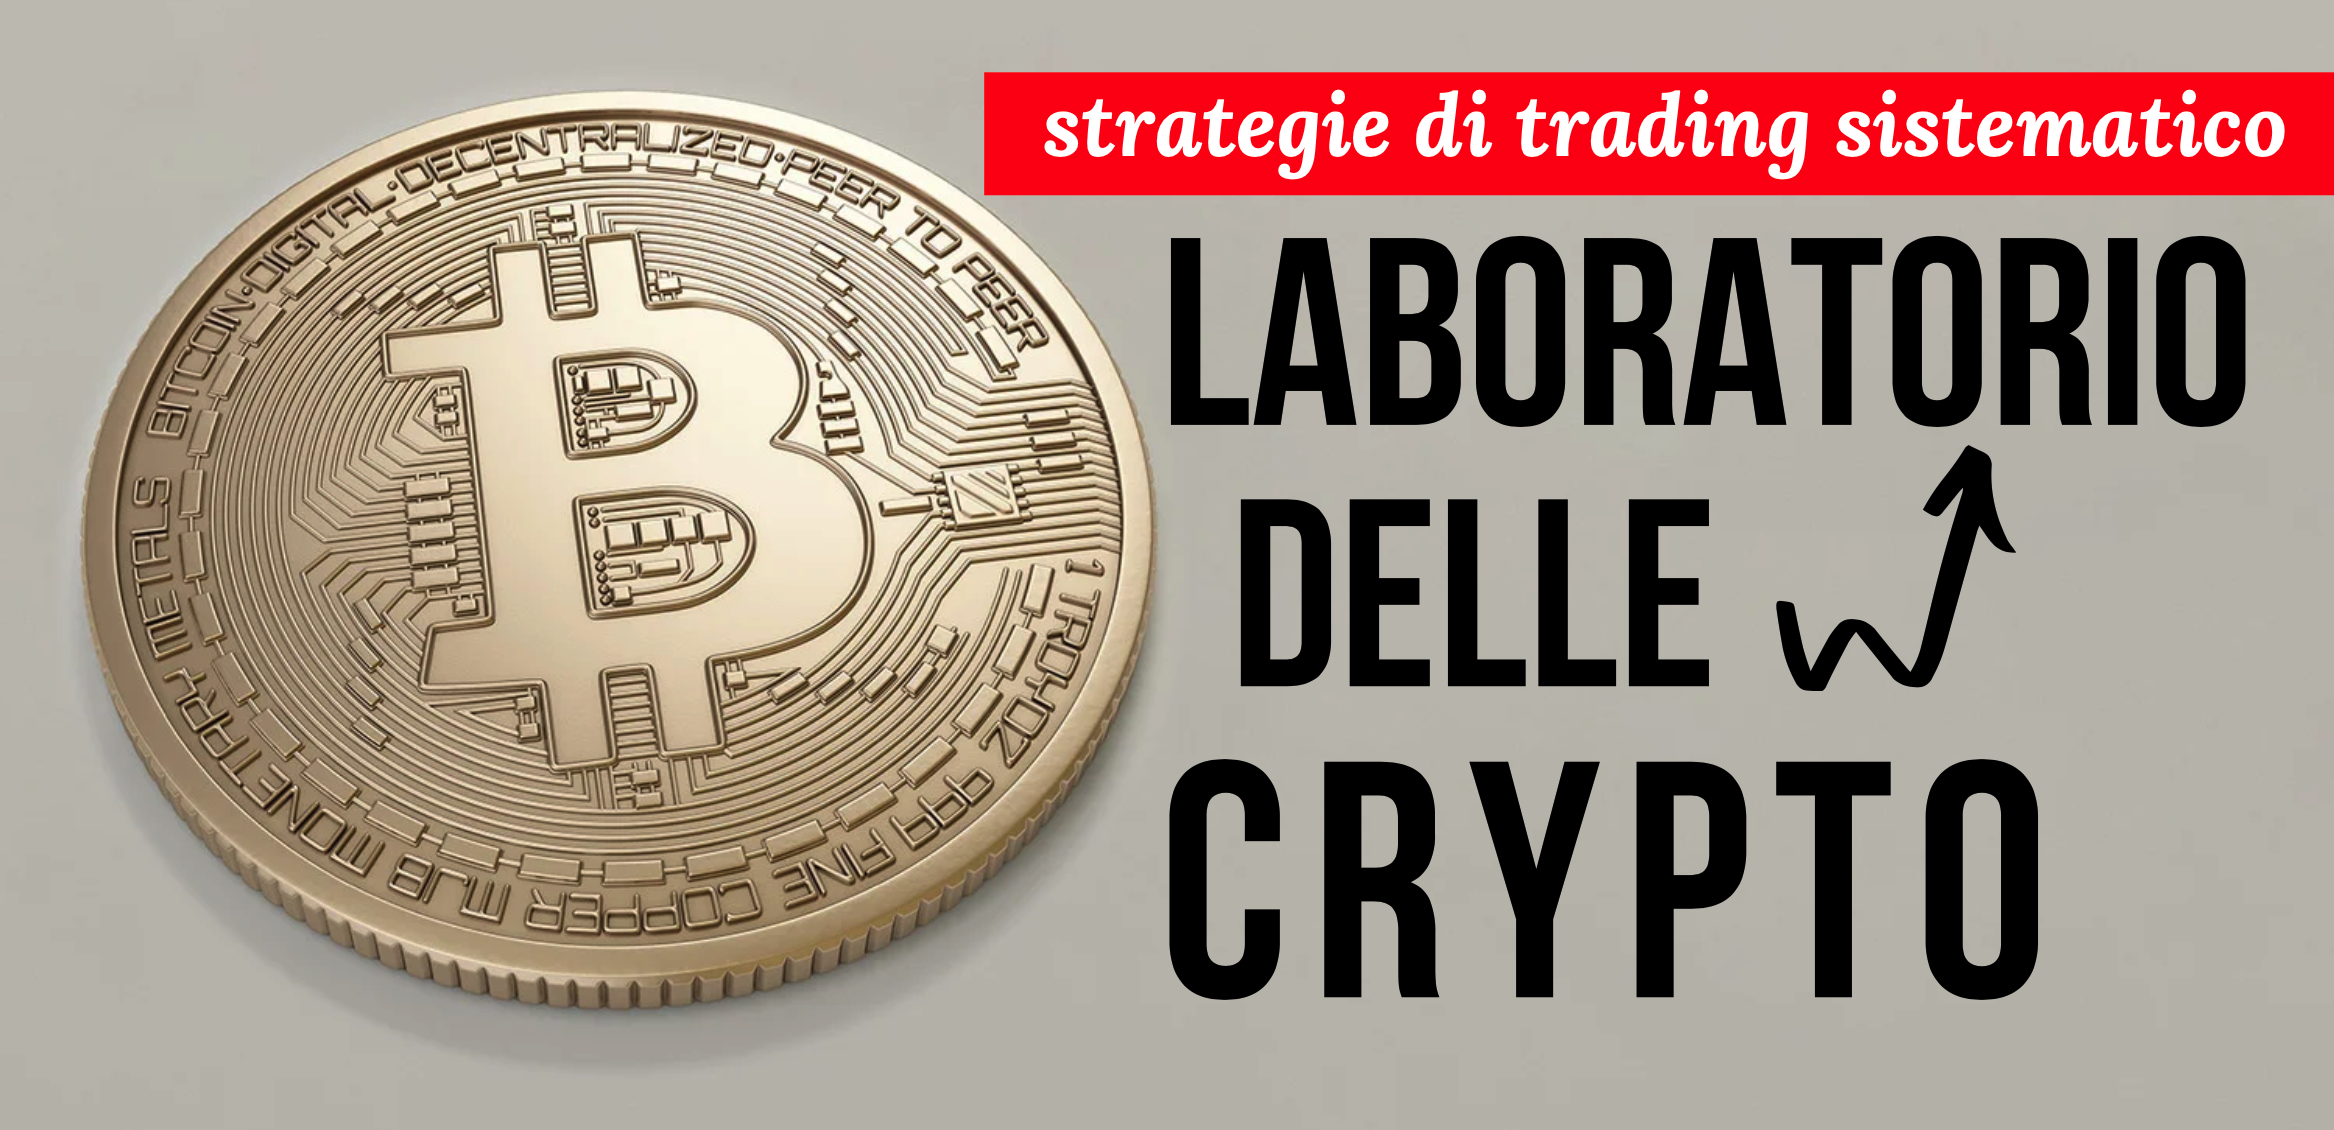 corso crypto: strategie trading crypto, trading automatico bitcoin